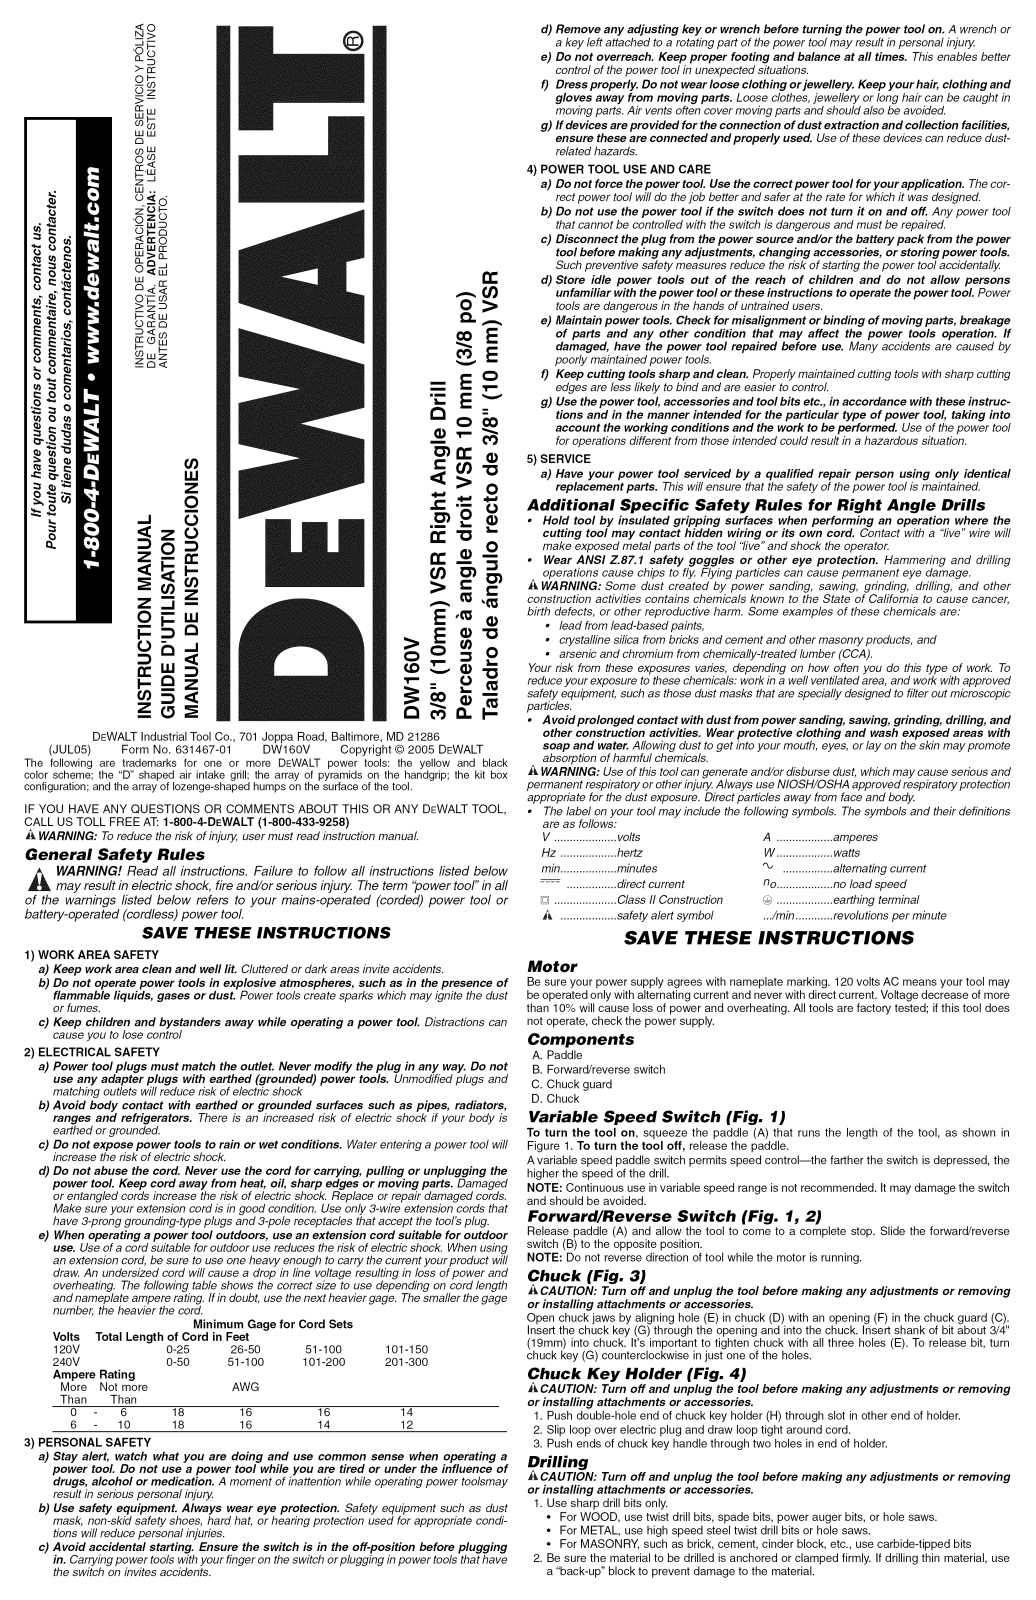 DeWalt DW160V TYPE2, DW160V TYPE1 Owner’s Manual